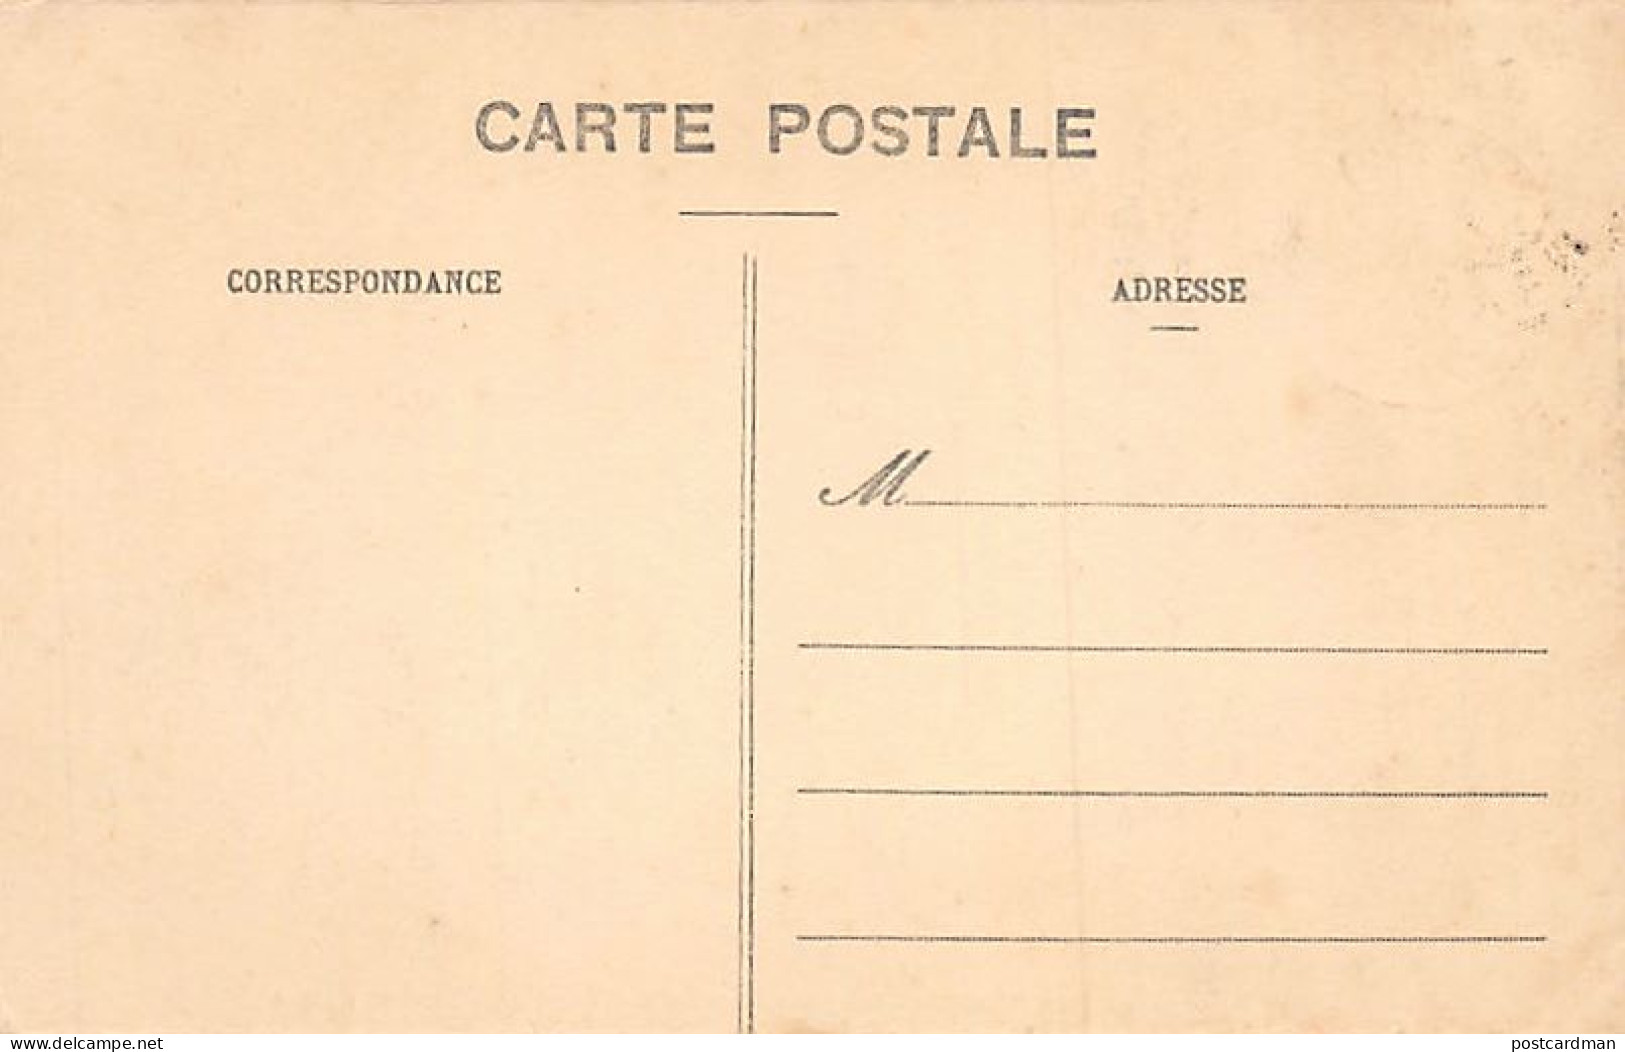 Gabon - LIBREVILLE - Case à L'Oranger (Village Louis) - Ed. S.H.O. - G.P. 9 - Gabon